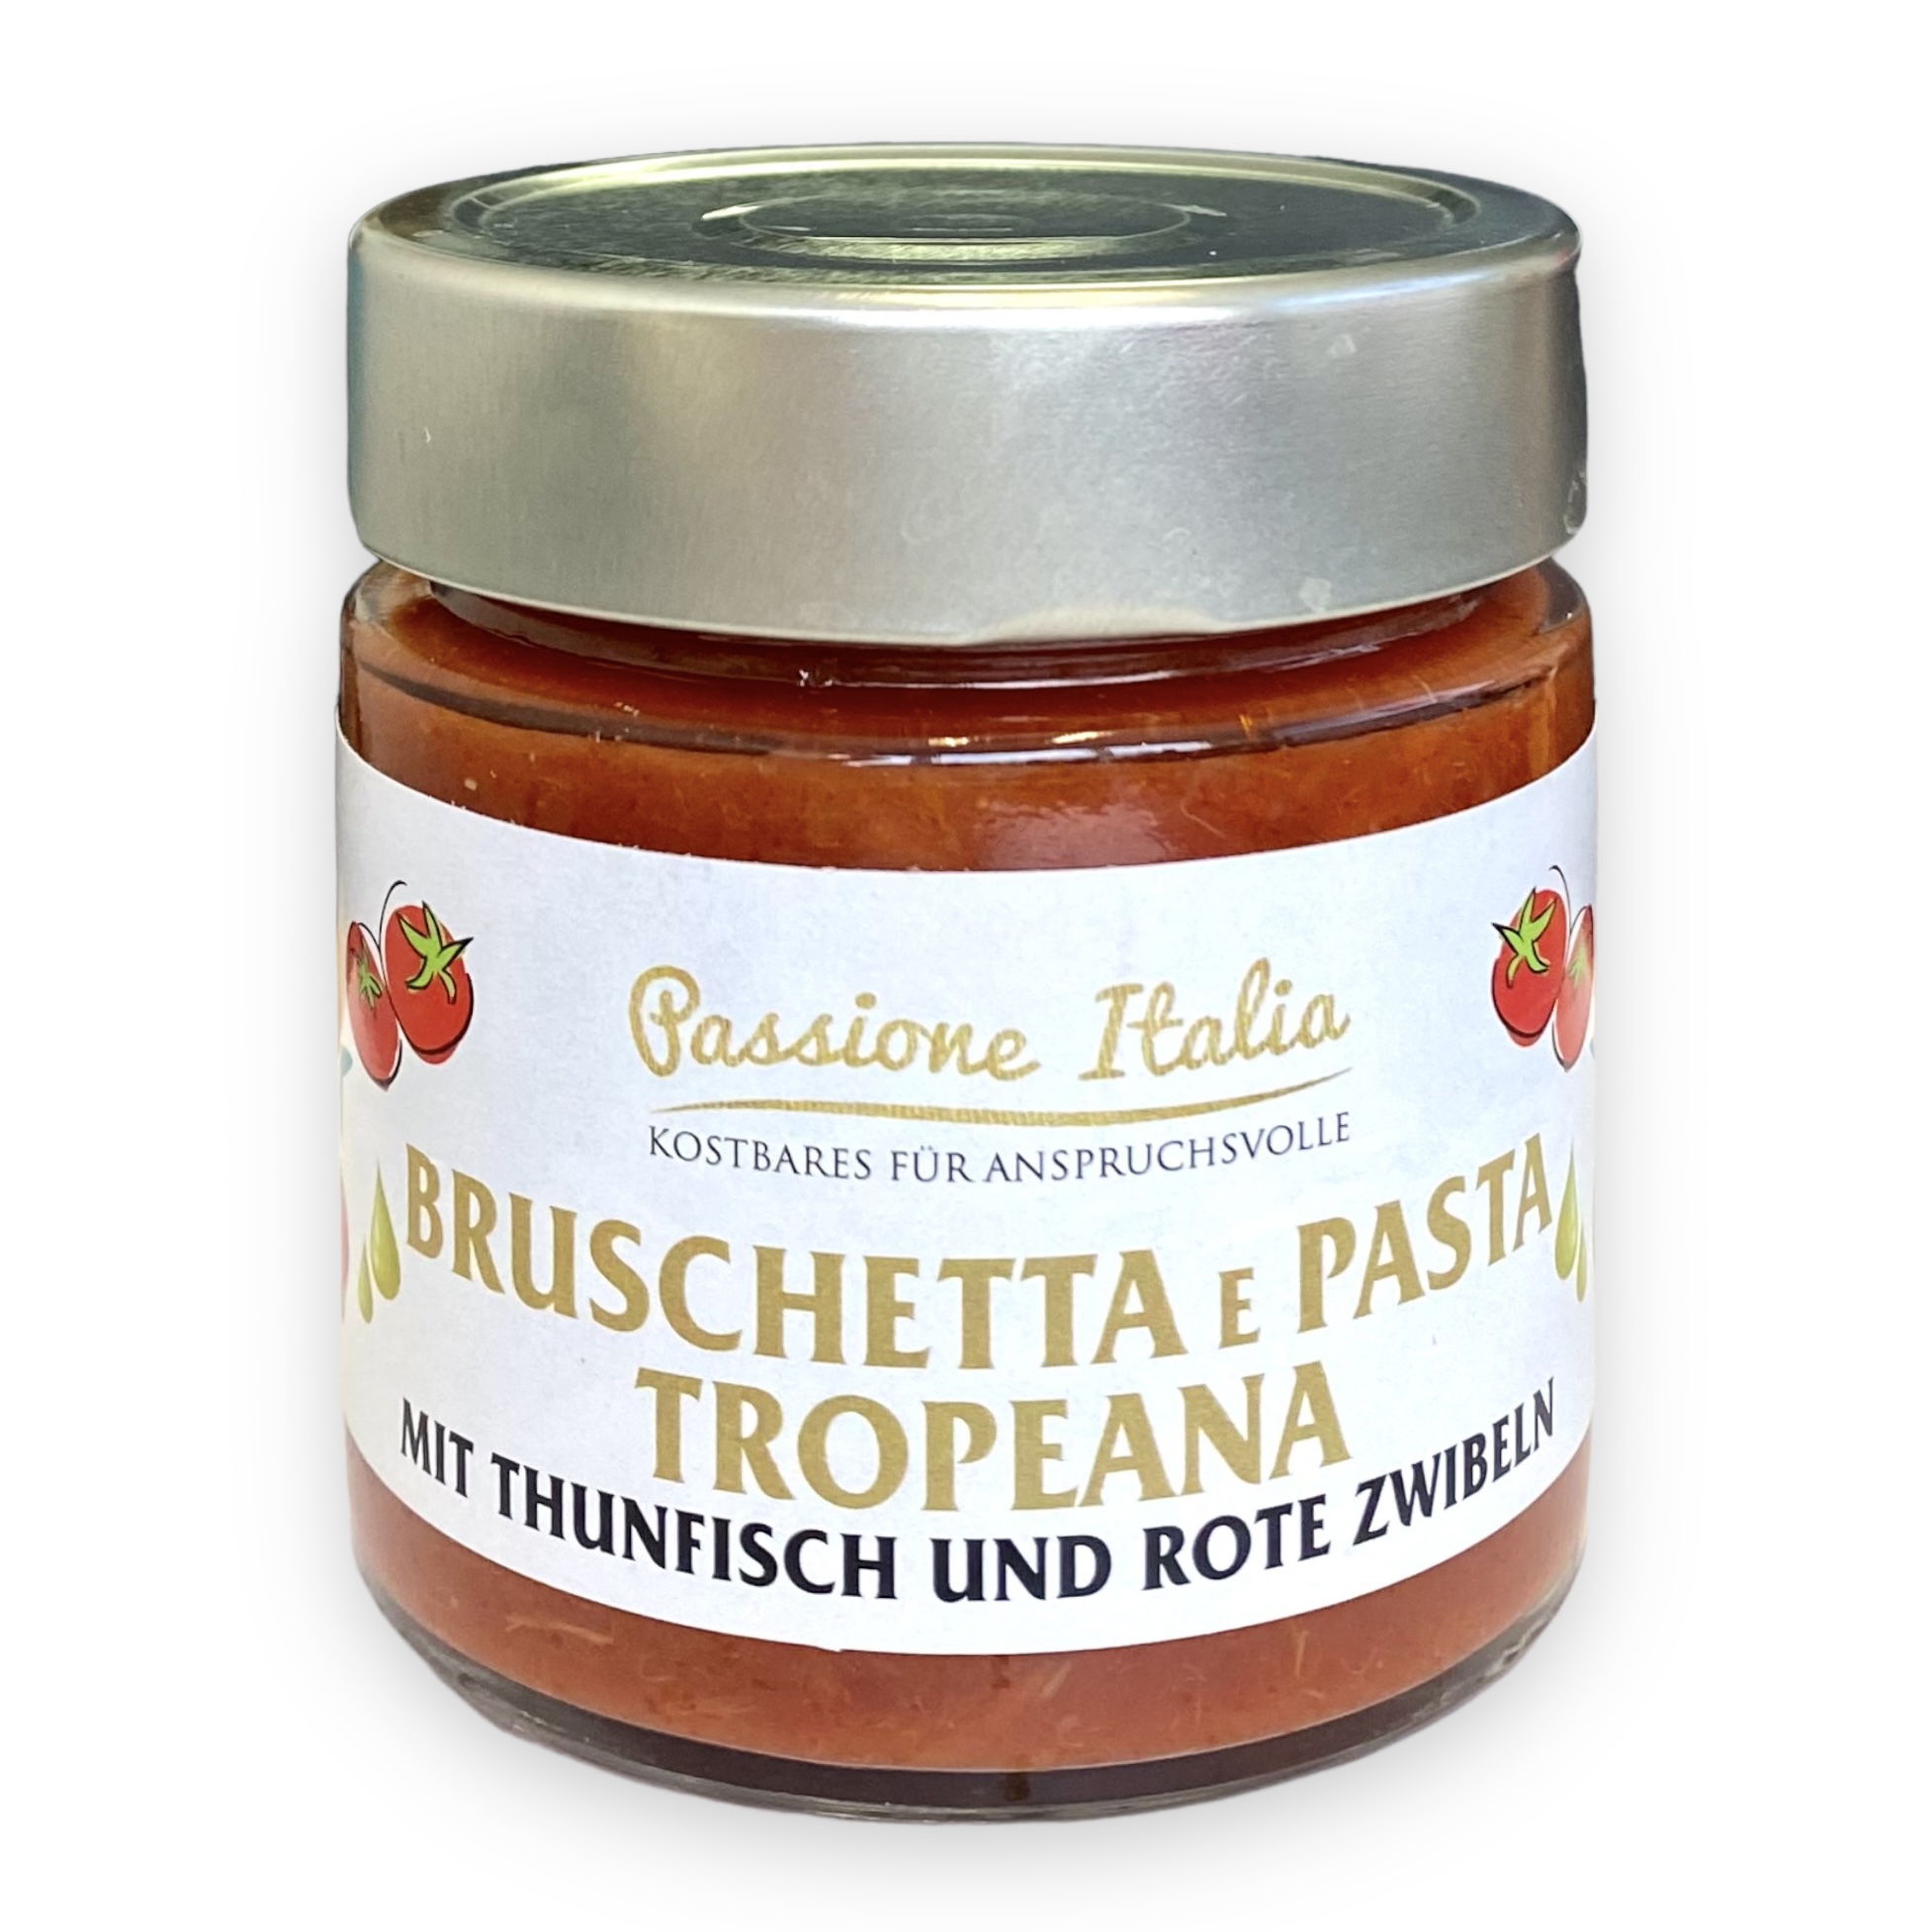 Bruschetta & Pasta Tropeana - Tomatensoße mit Thunfisch und roten Zwiebeln